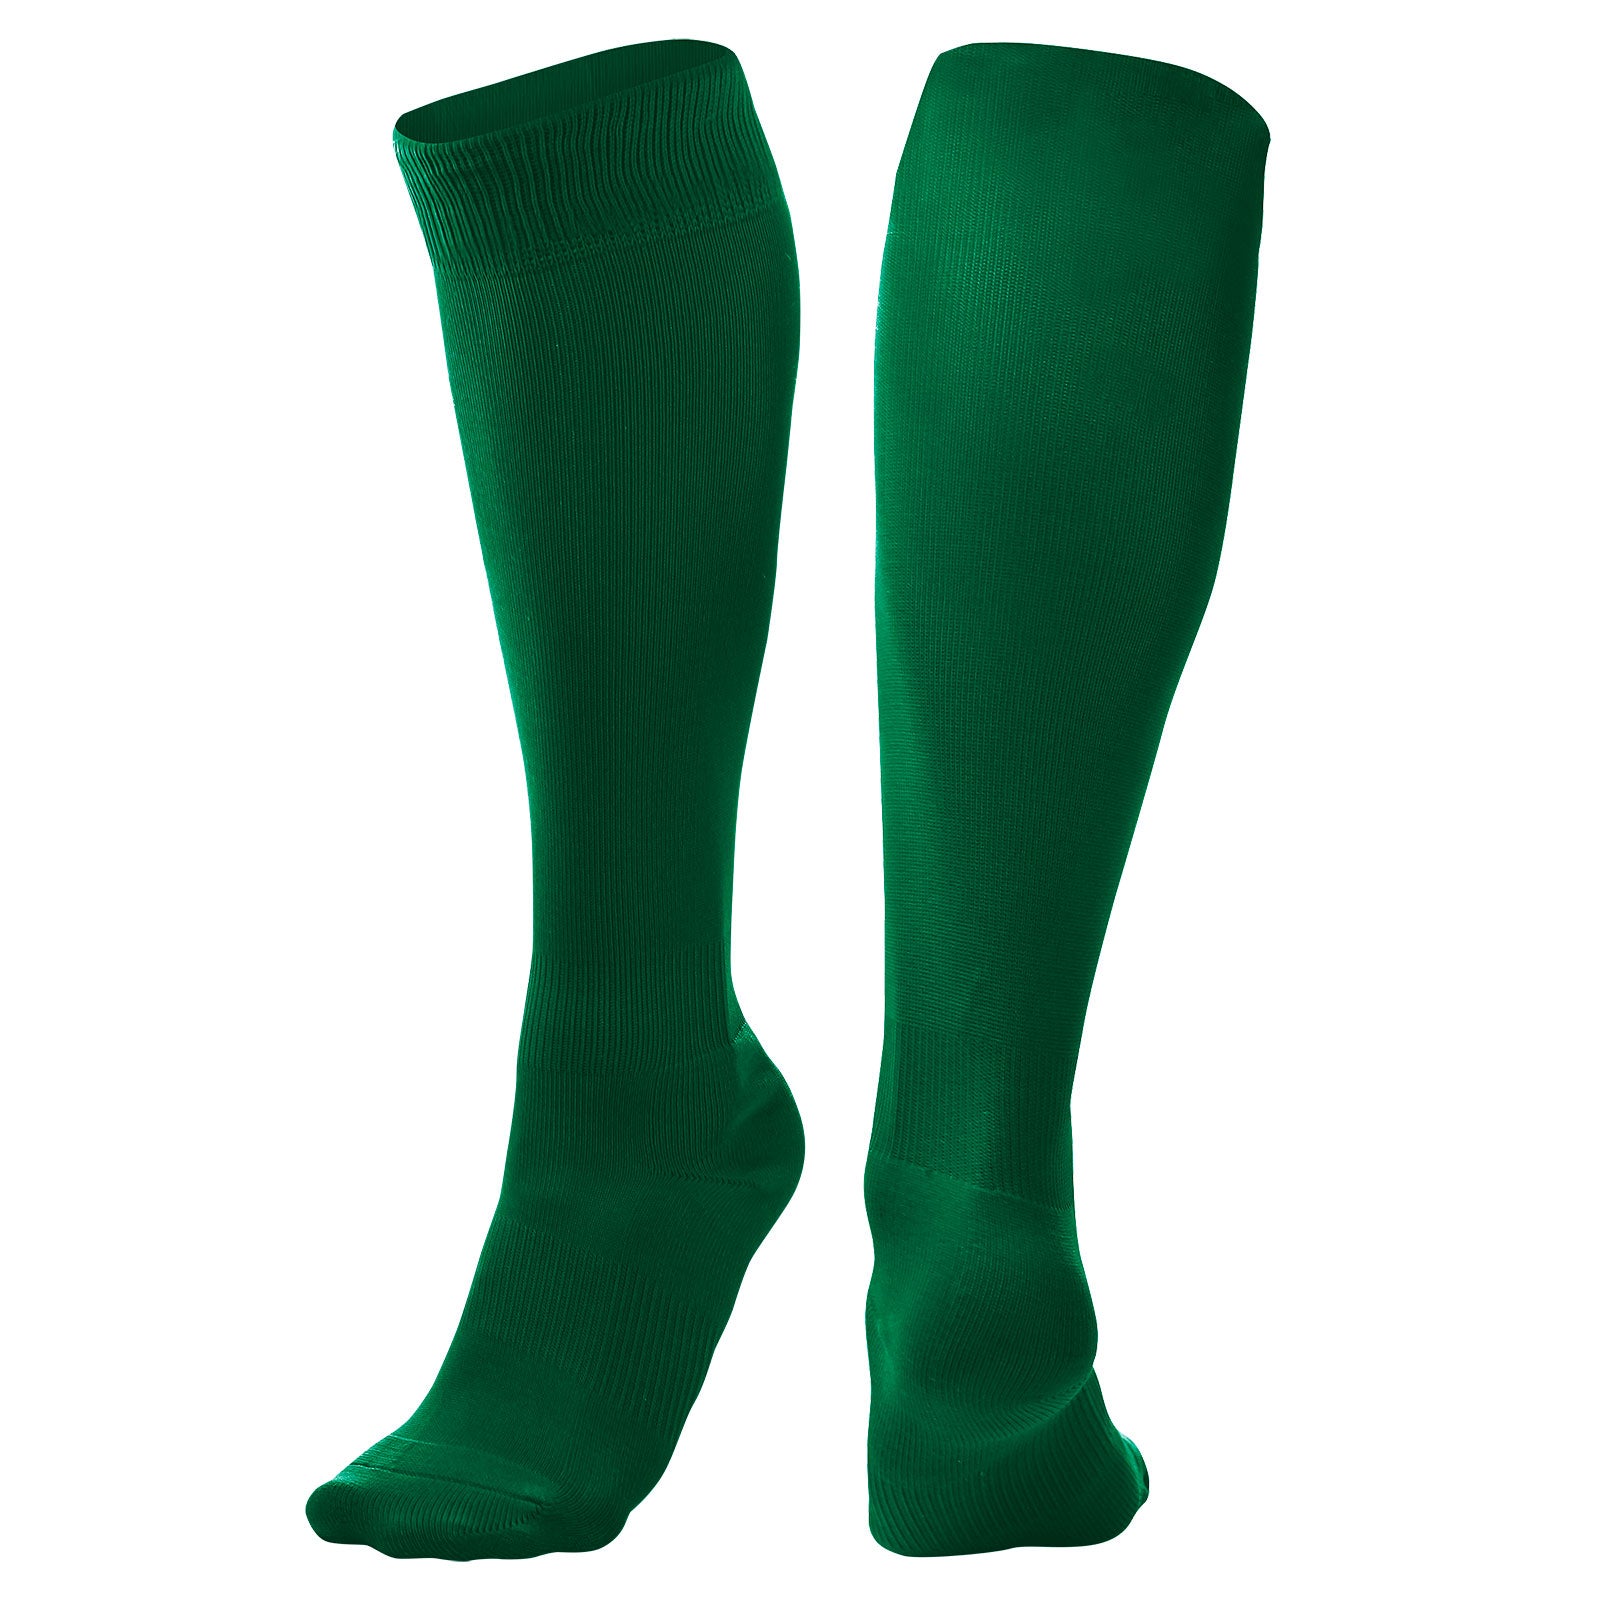 Pro Socks for Soccer FOREST GREEN BODY